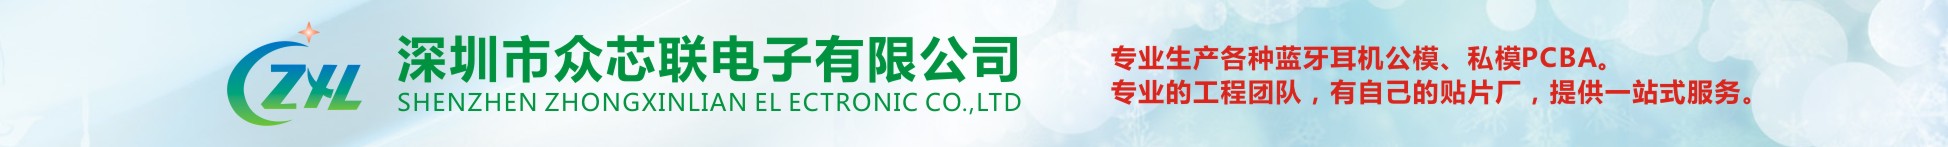 深圳市众芯联电子有限公司